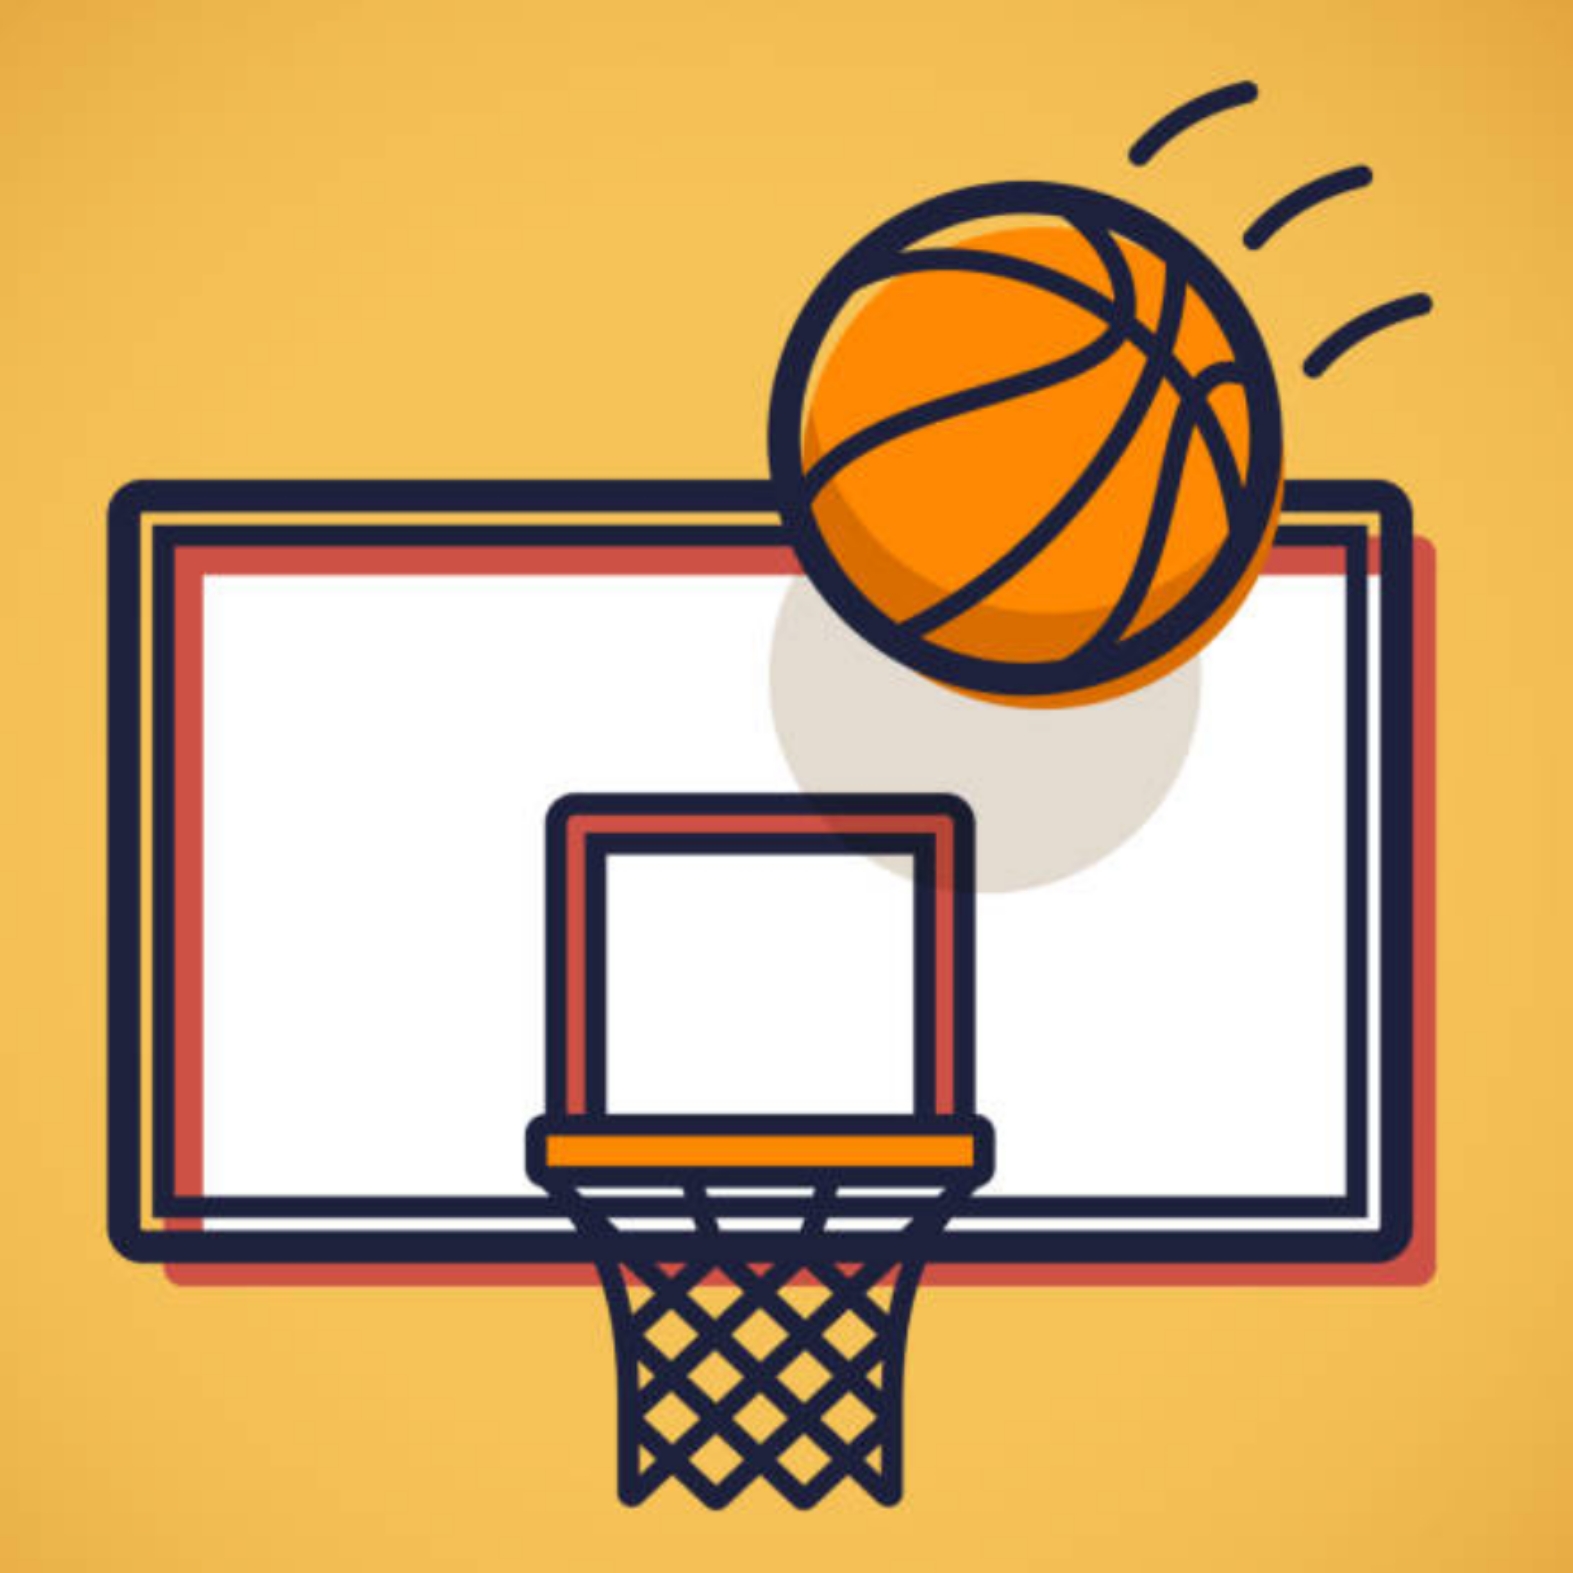 〈6月15日〉憧れのレイクスの選手とバスケットボールを楽しもう♪「親子でバスケットボール体験教室」が草津市で開催！申込みは6月6日まで。